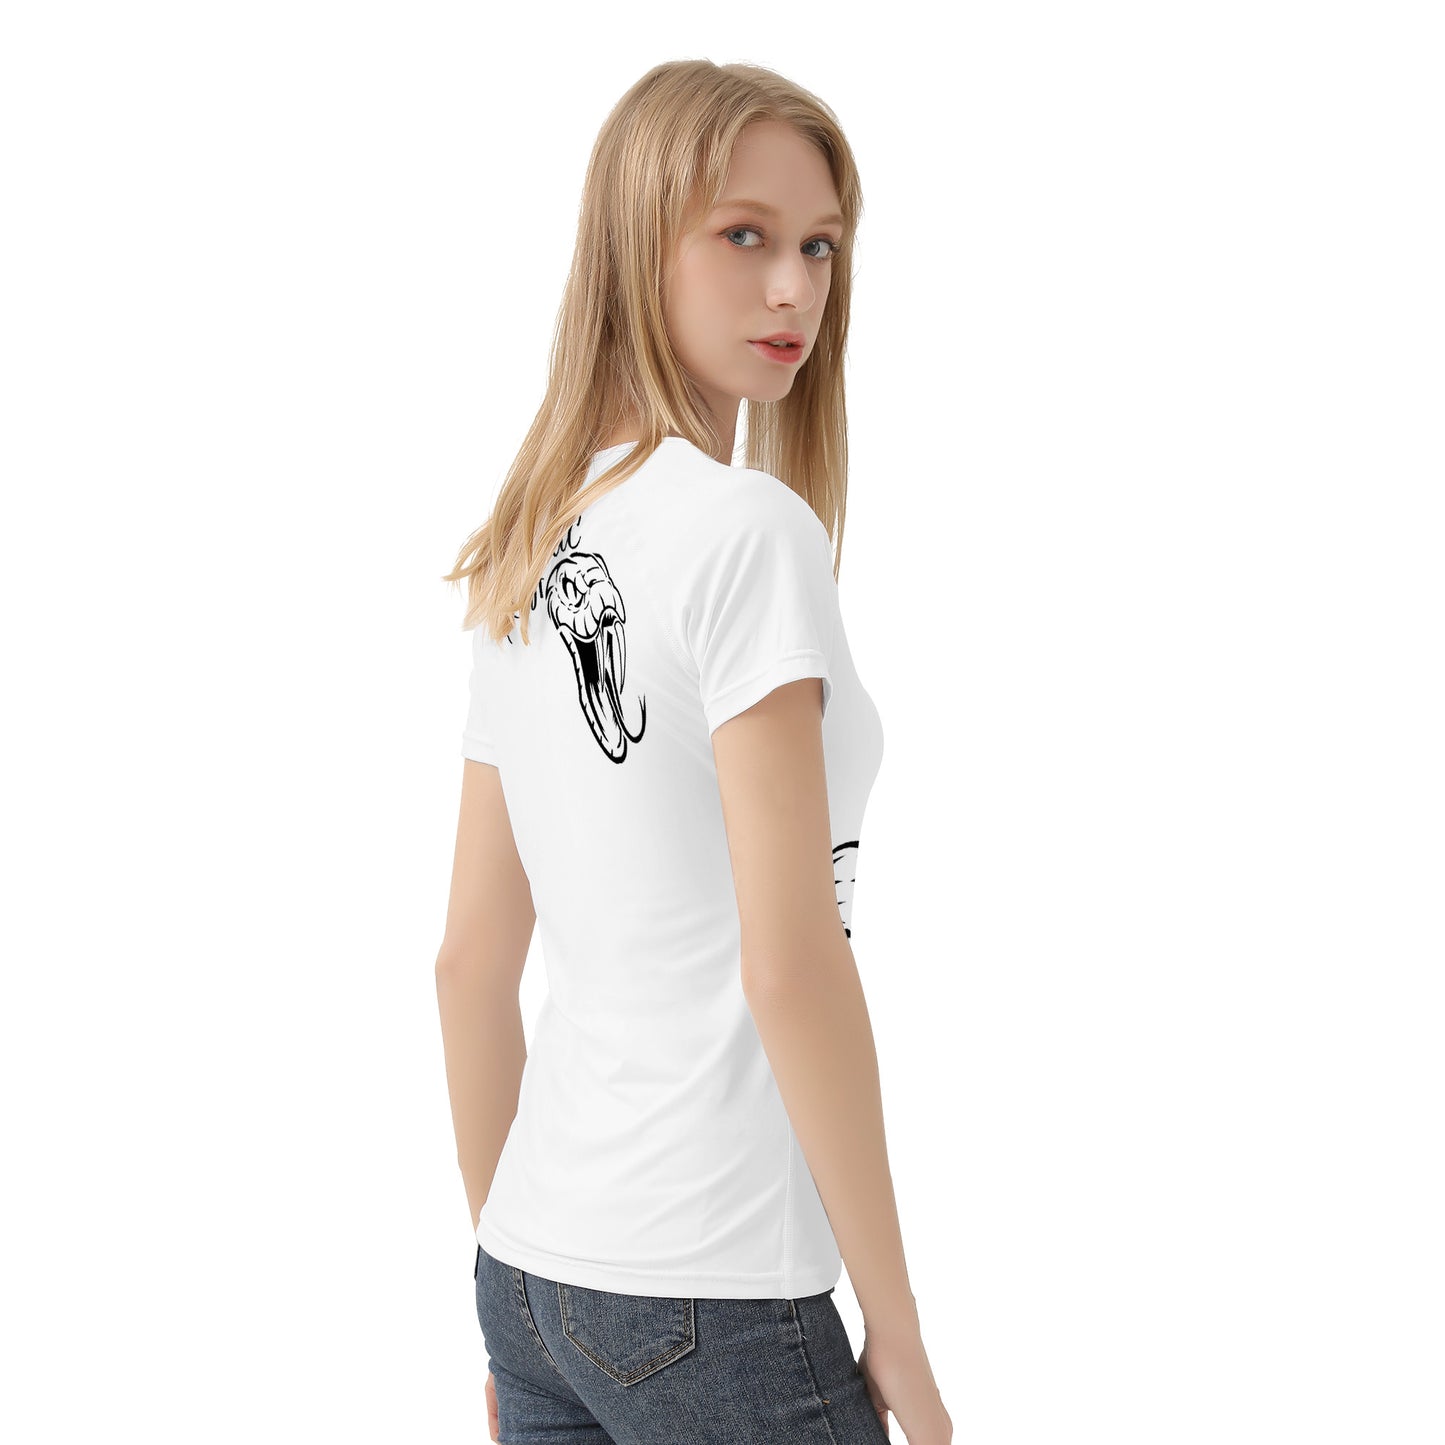 Women's All-Over Print T shirt